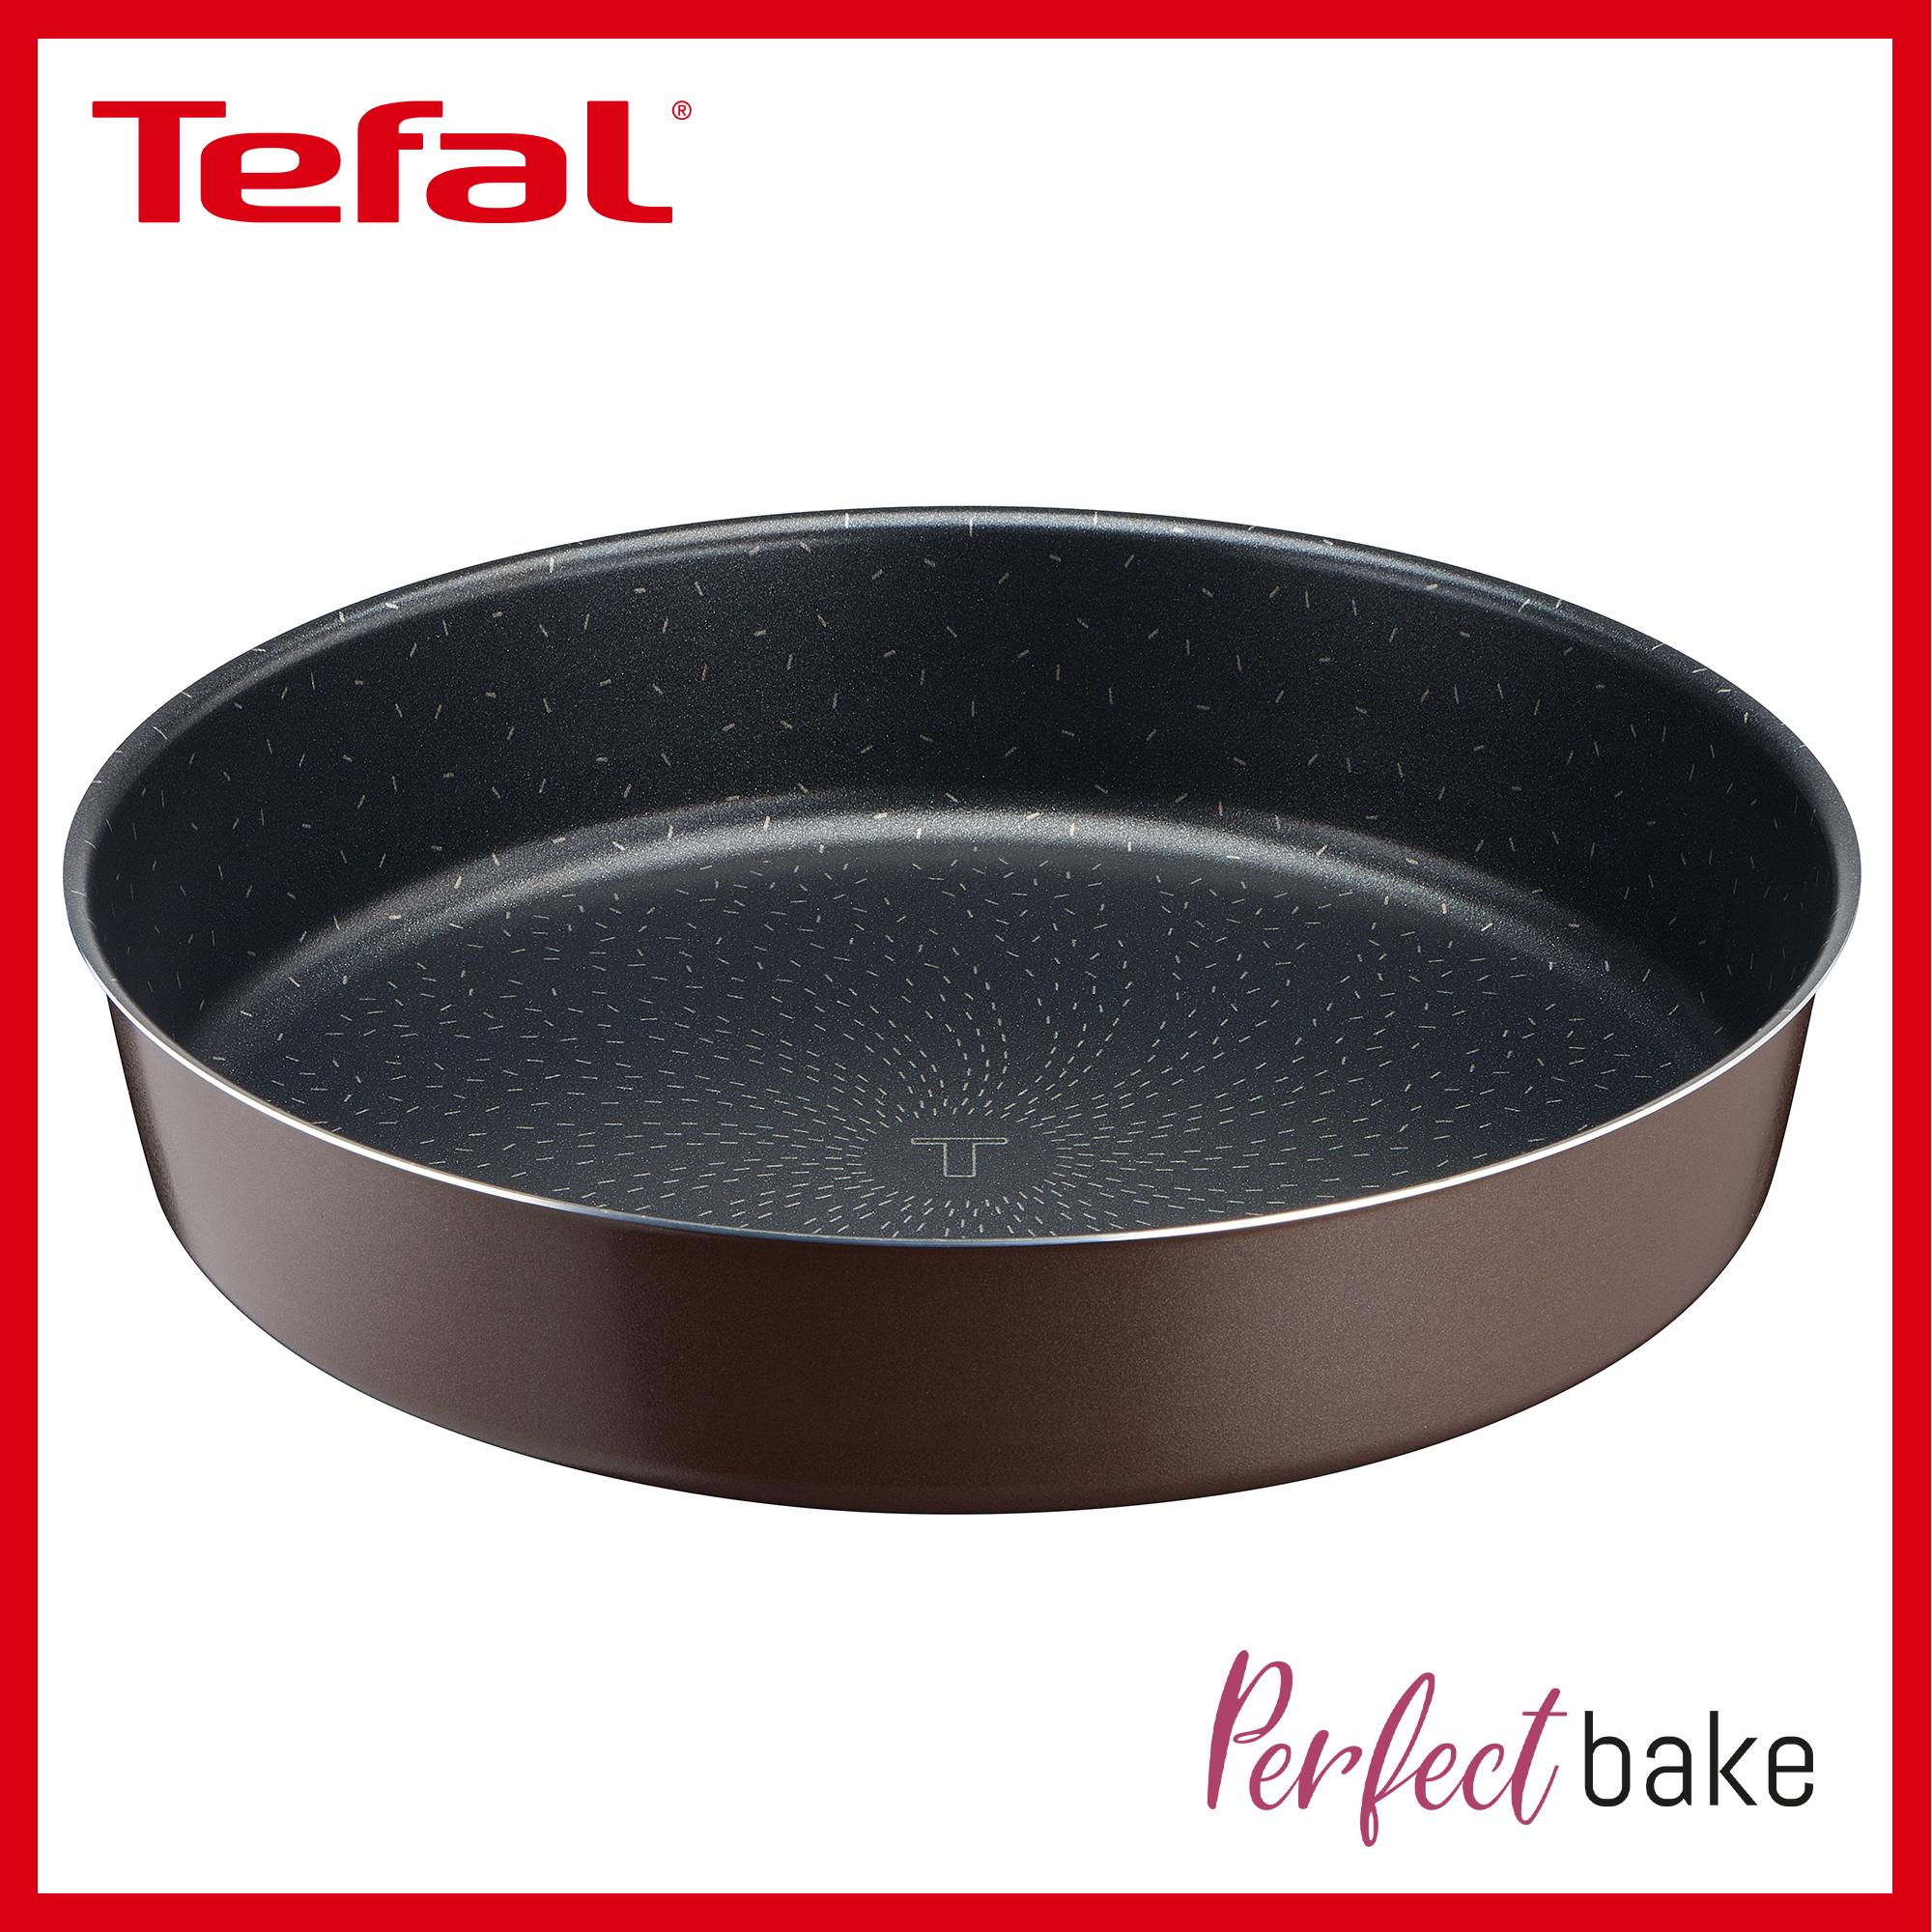 Tefal Perfectbake Round Cake 26cm